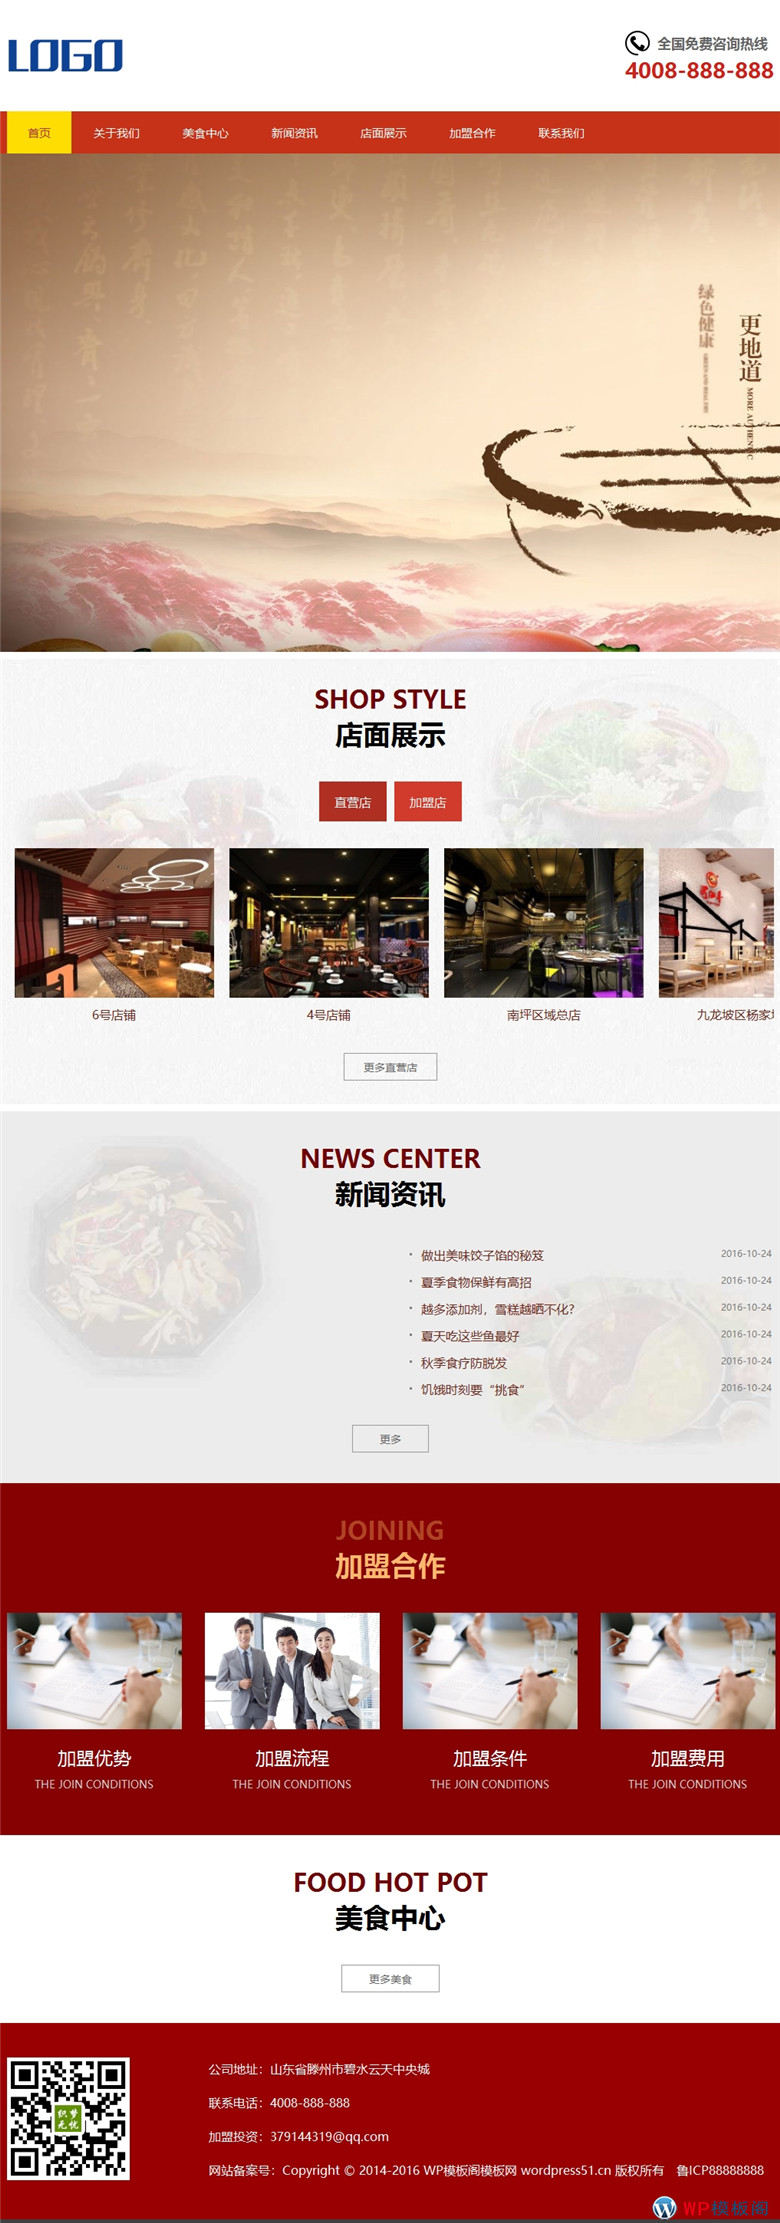 手机鸳鸯火锅html5特色美食店加盟模自适应WordPress网站模板演示图